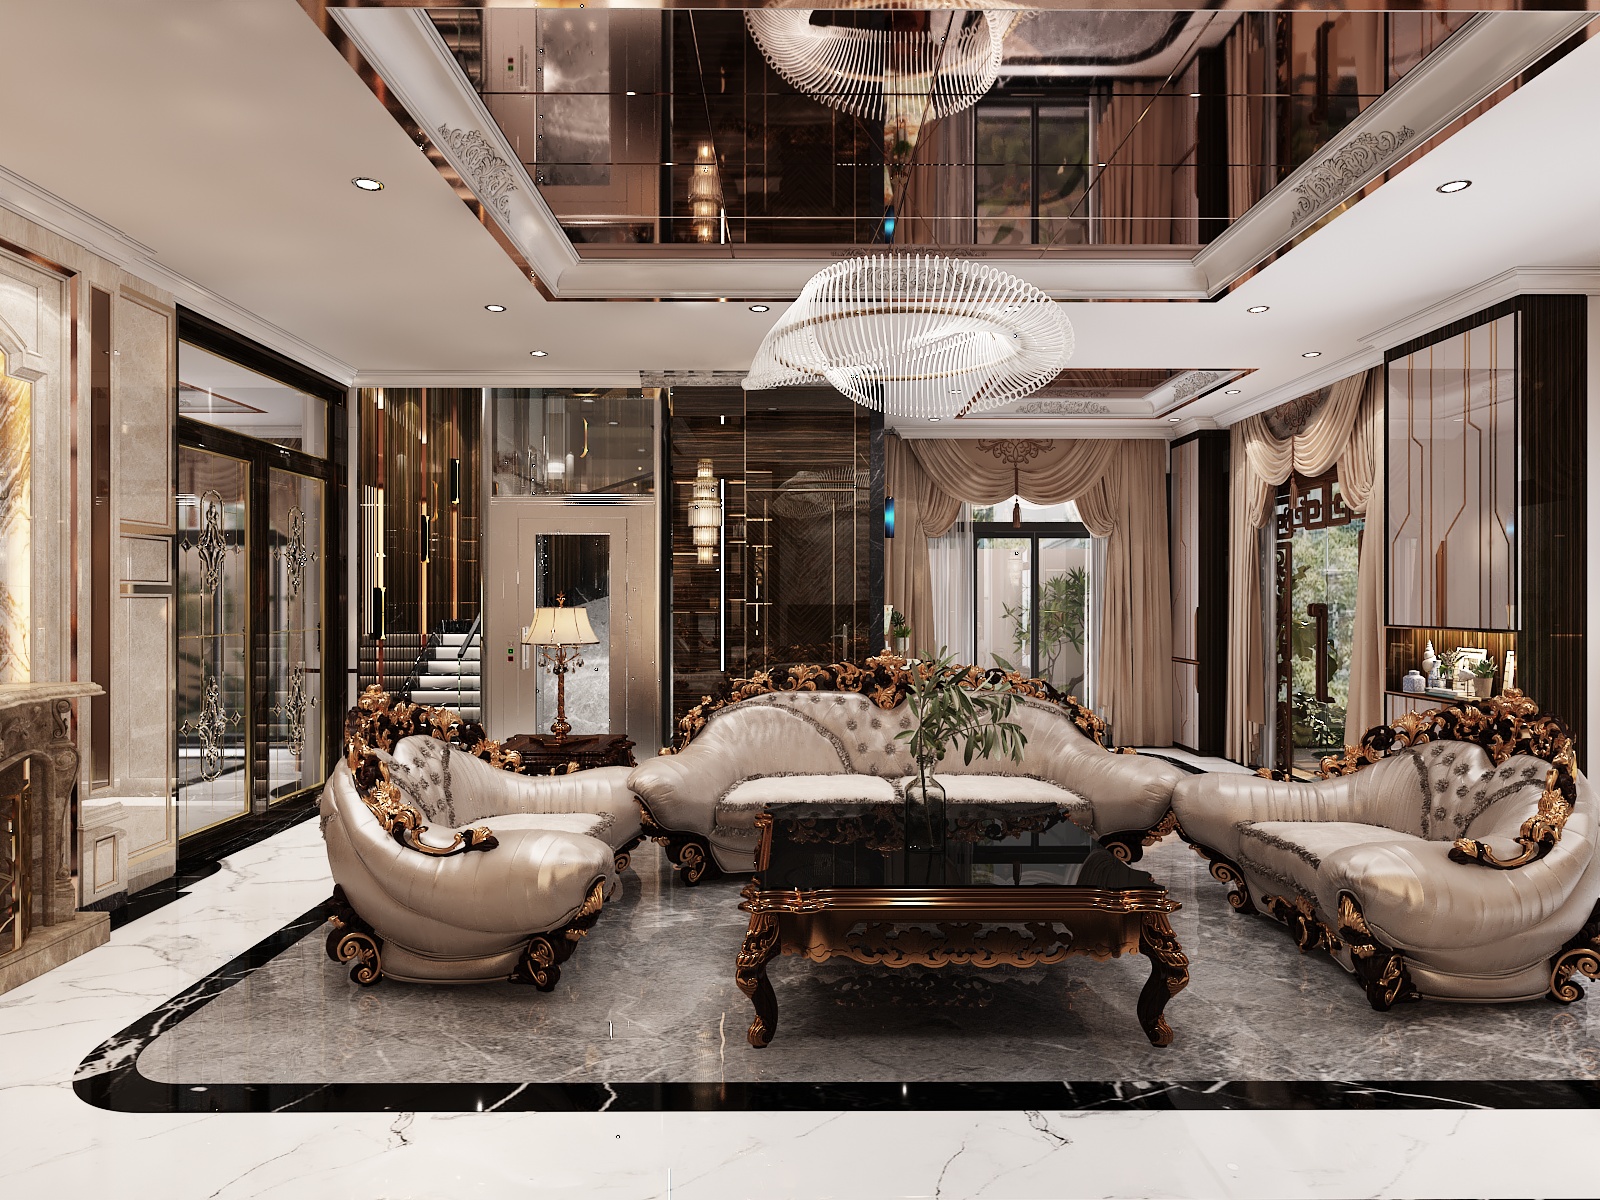 Thiết kế nội thất Biệt Thự tại Hồ Chí Minh BIỆT THỰ BÌNH TÂN 1645236520 7